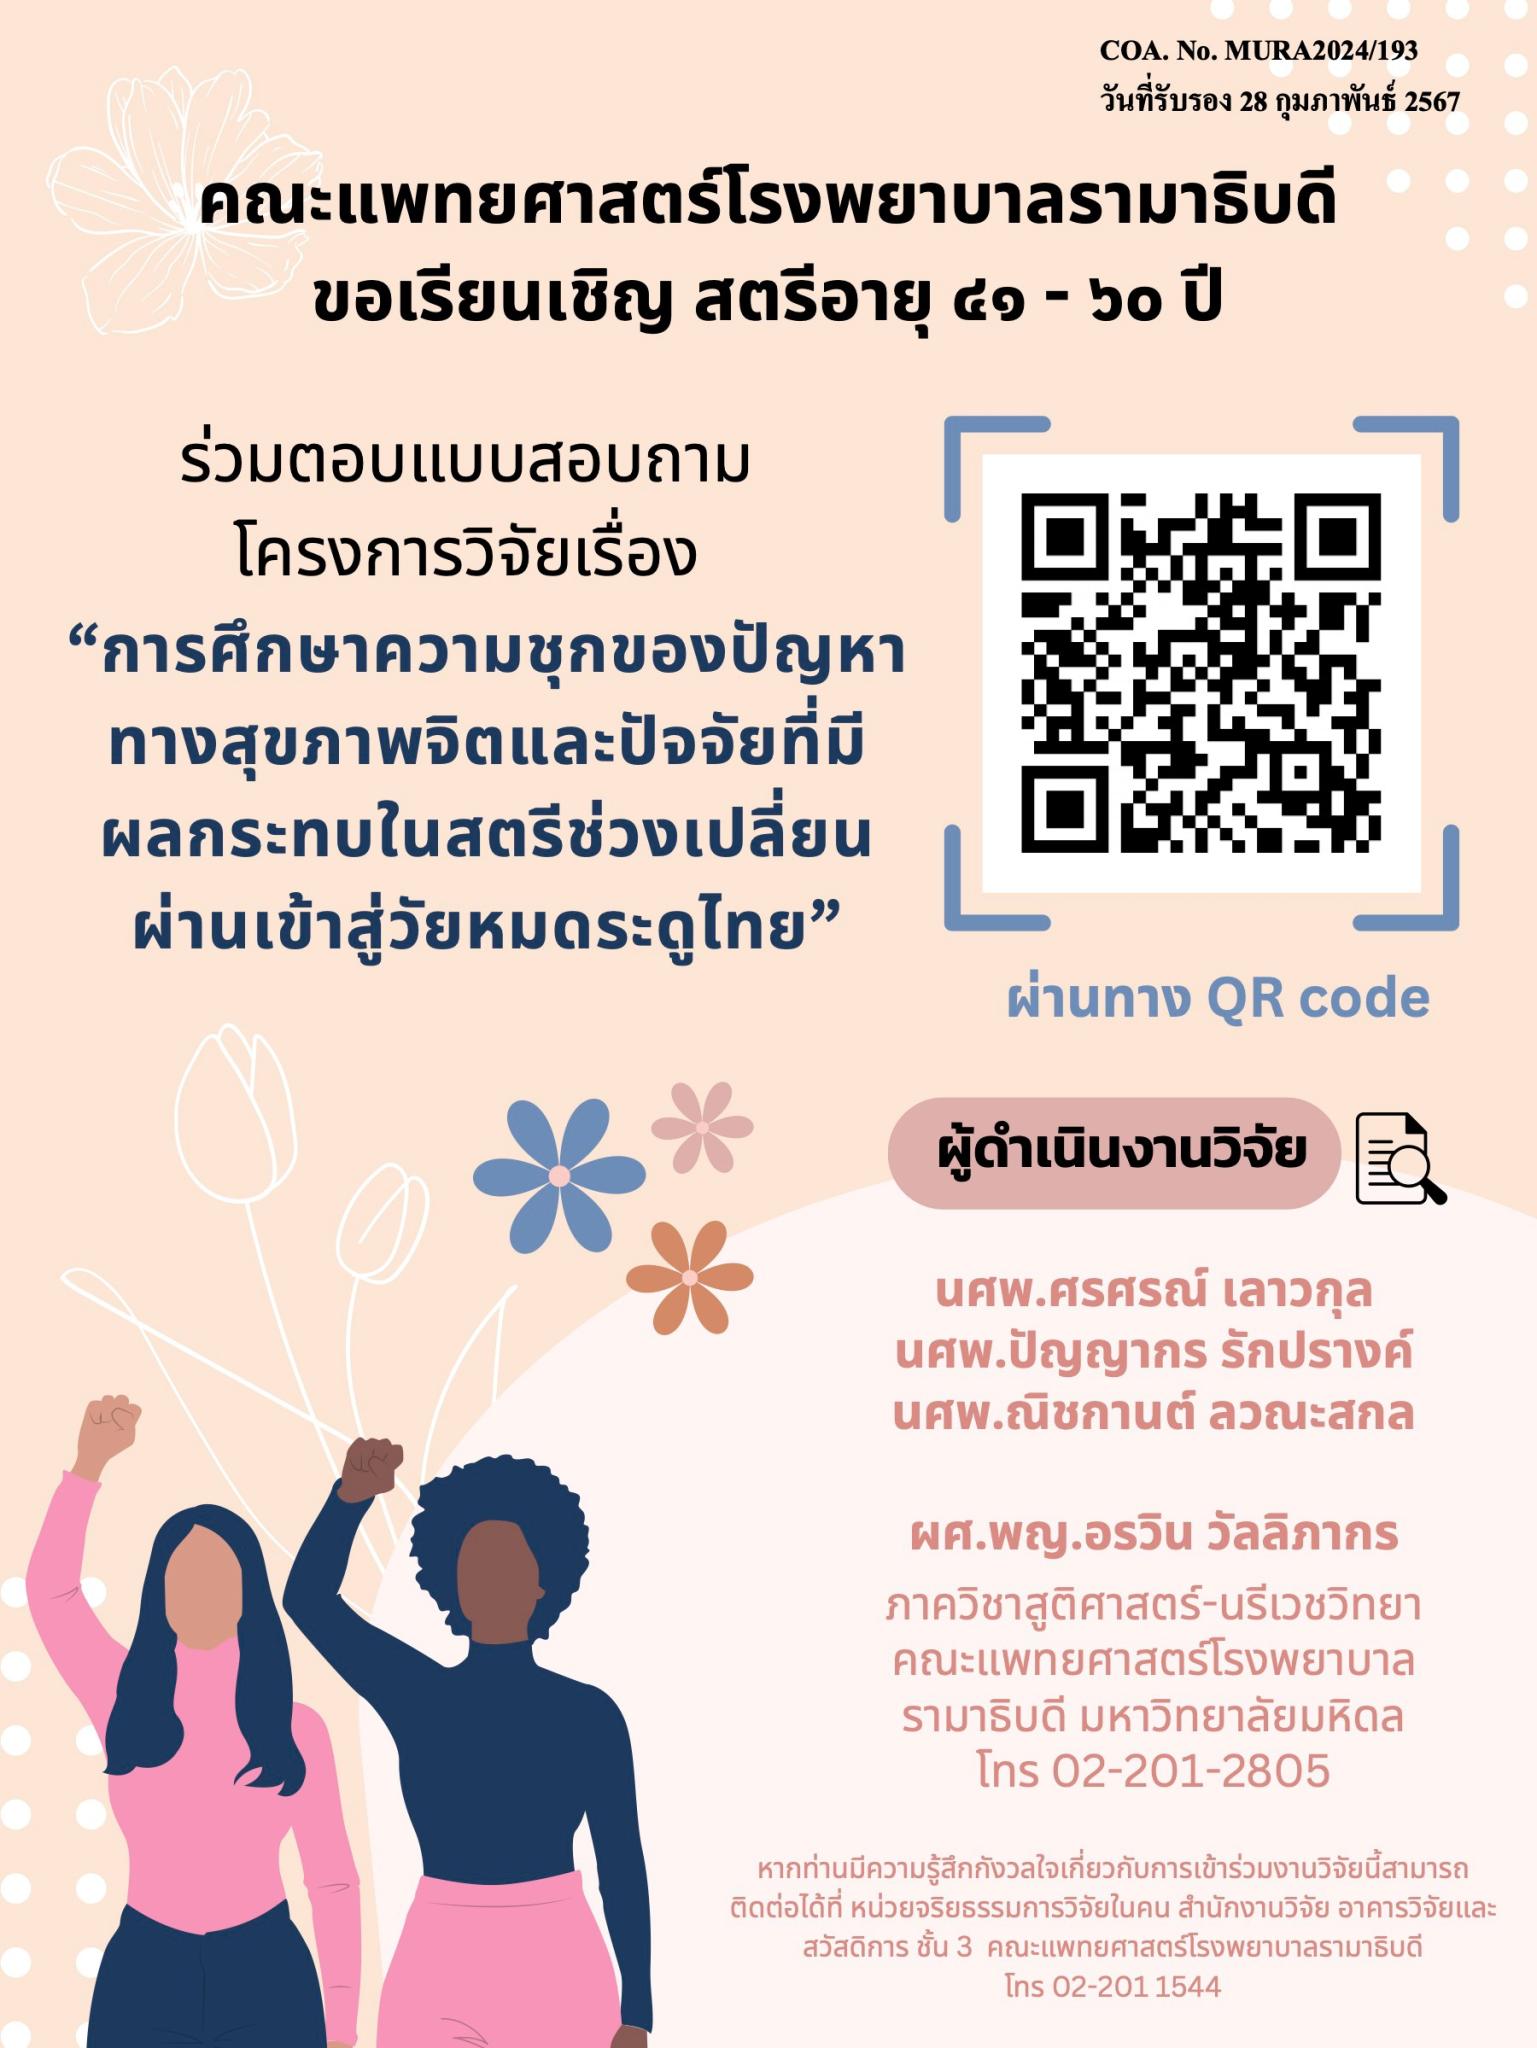 ขอเรียนเชิญสตรีอายุ ๔๑-๖๐ ปี ร่วมตอบแบบสอบถามโครงการวิจัยเรื่อง “การศึกษาความชุกของปัญหาทางสุขภาพจิตและปัจจัยที่มีผลกระทบในสตรีช่วงเปลี่ยนผ่านเข้าสู่วัยหมดระดูไทย"